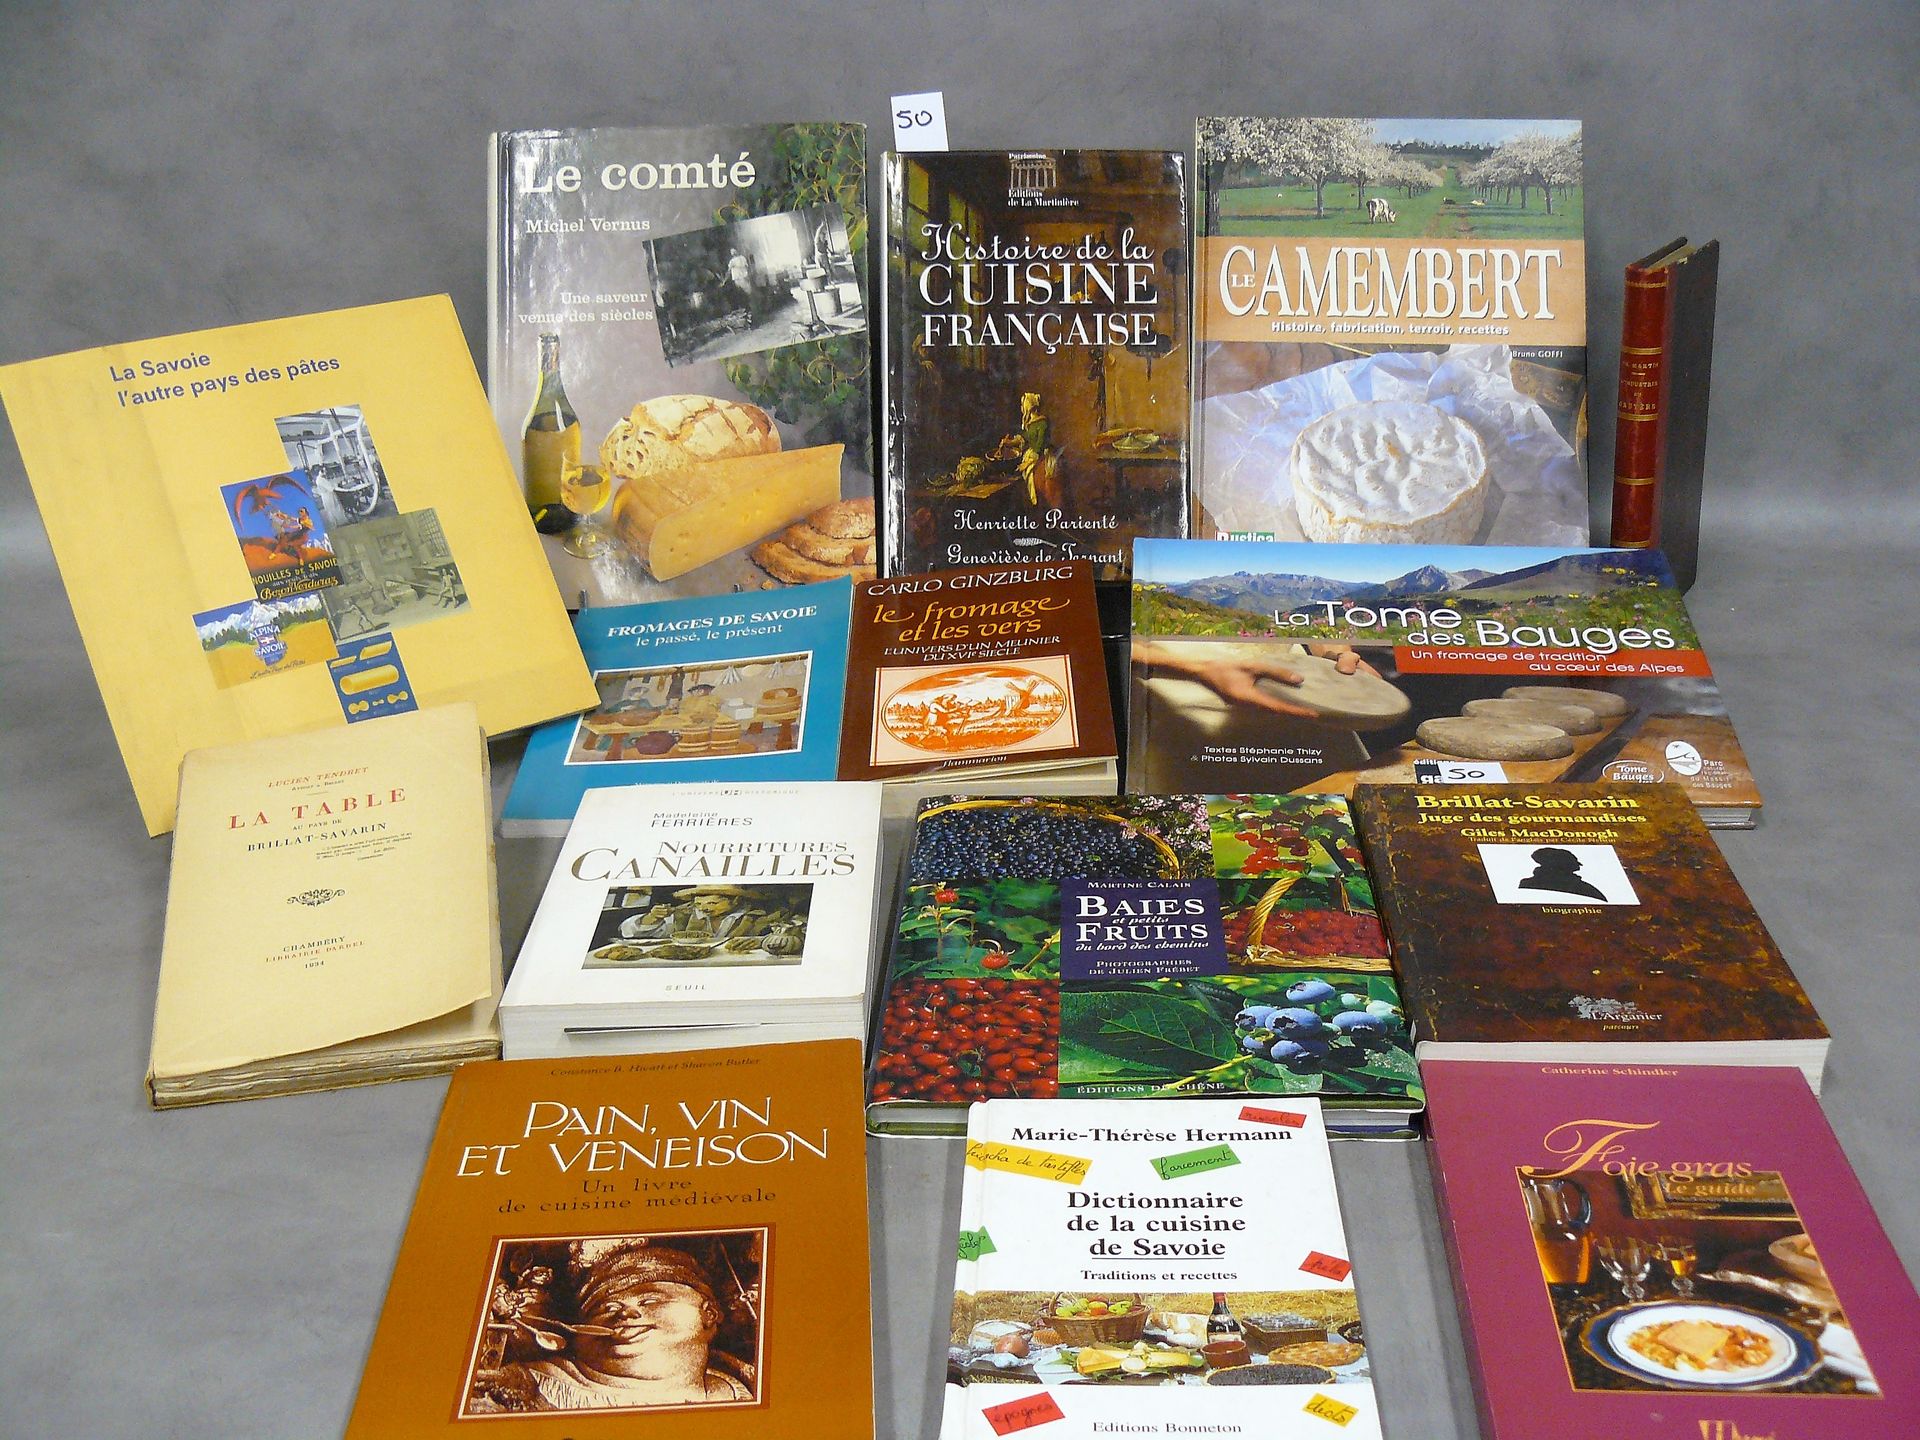 CUISINE set di 15 libri su cucina e formaggio tra cui: formaggio e vermi